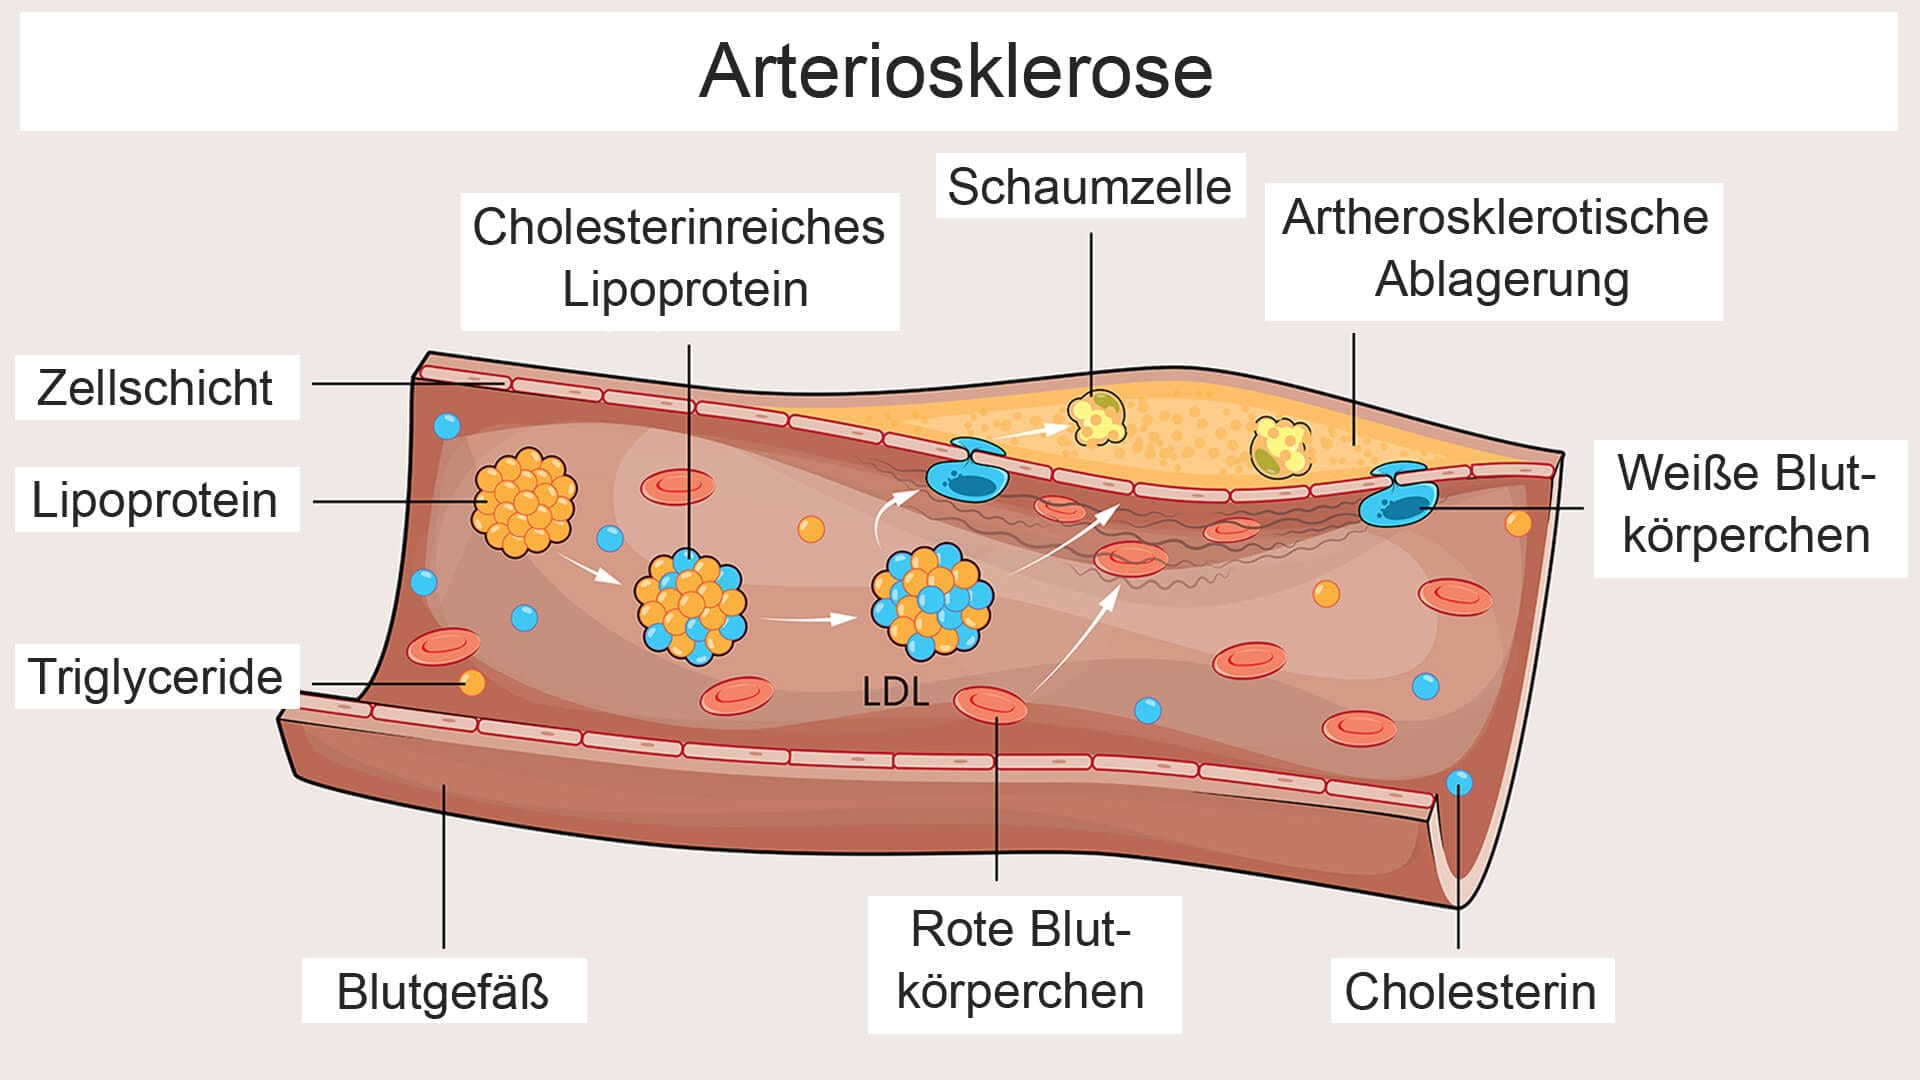 Die Grafik zeigt, wie das LDL und weitere cholesterinhaltige Lipoproteine an der Entstehung von Arteriosklerose beteiligt sind und zu Ablagerungen in den Blutgefäßen führen.